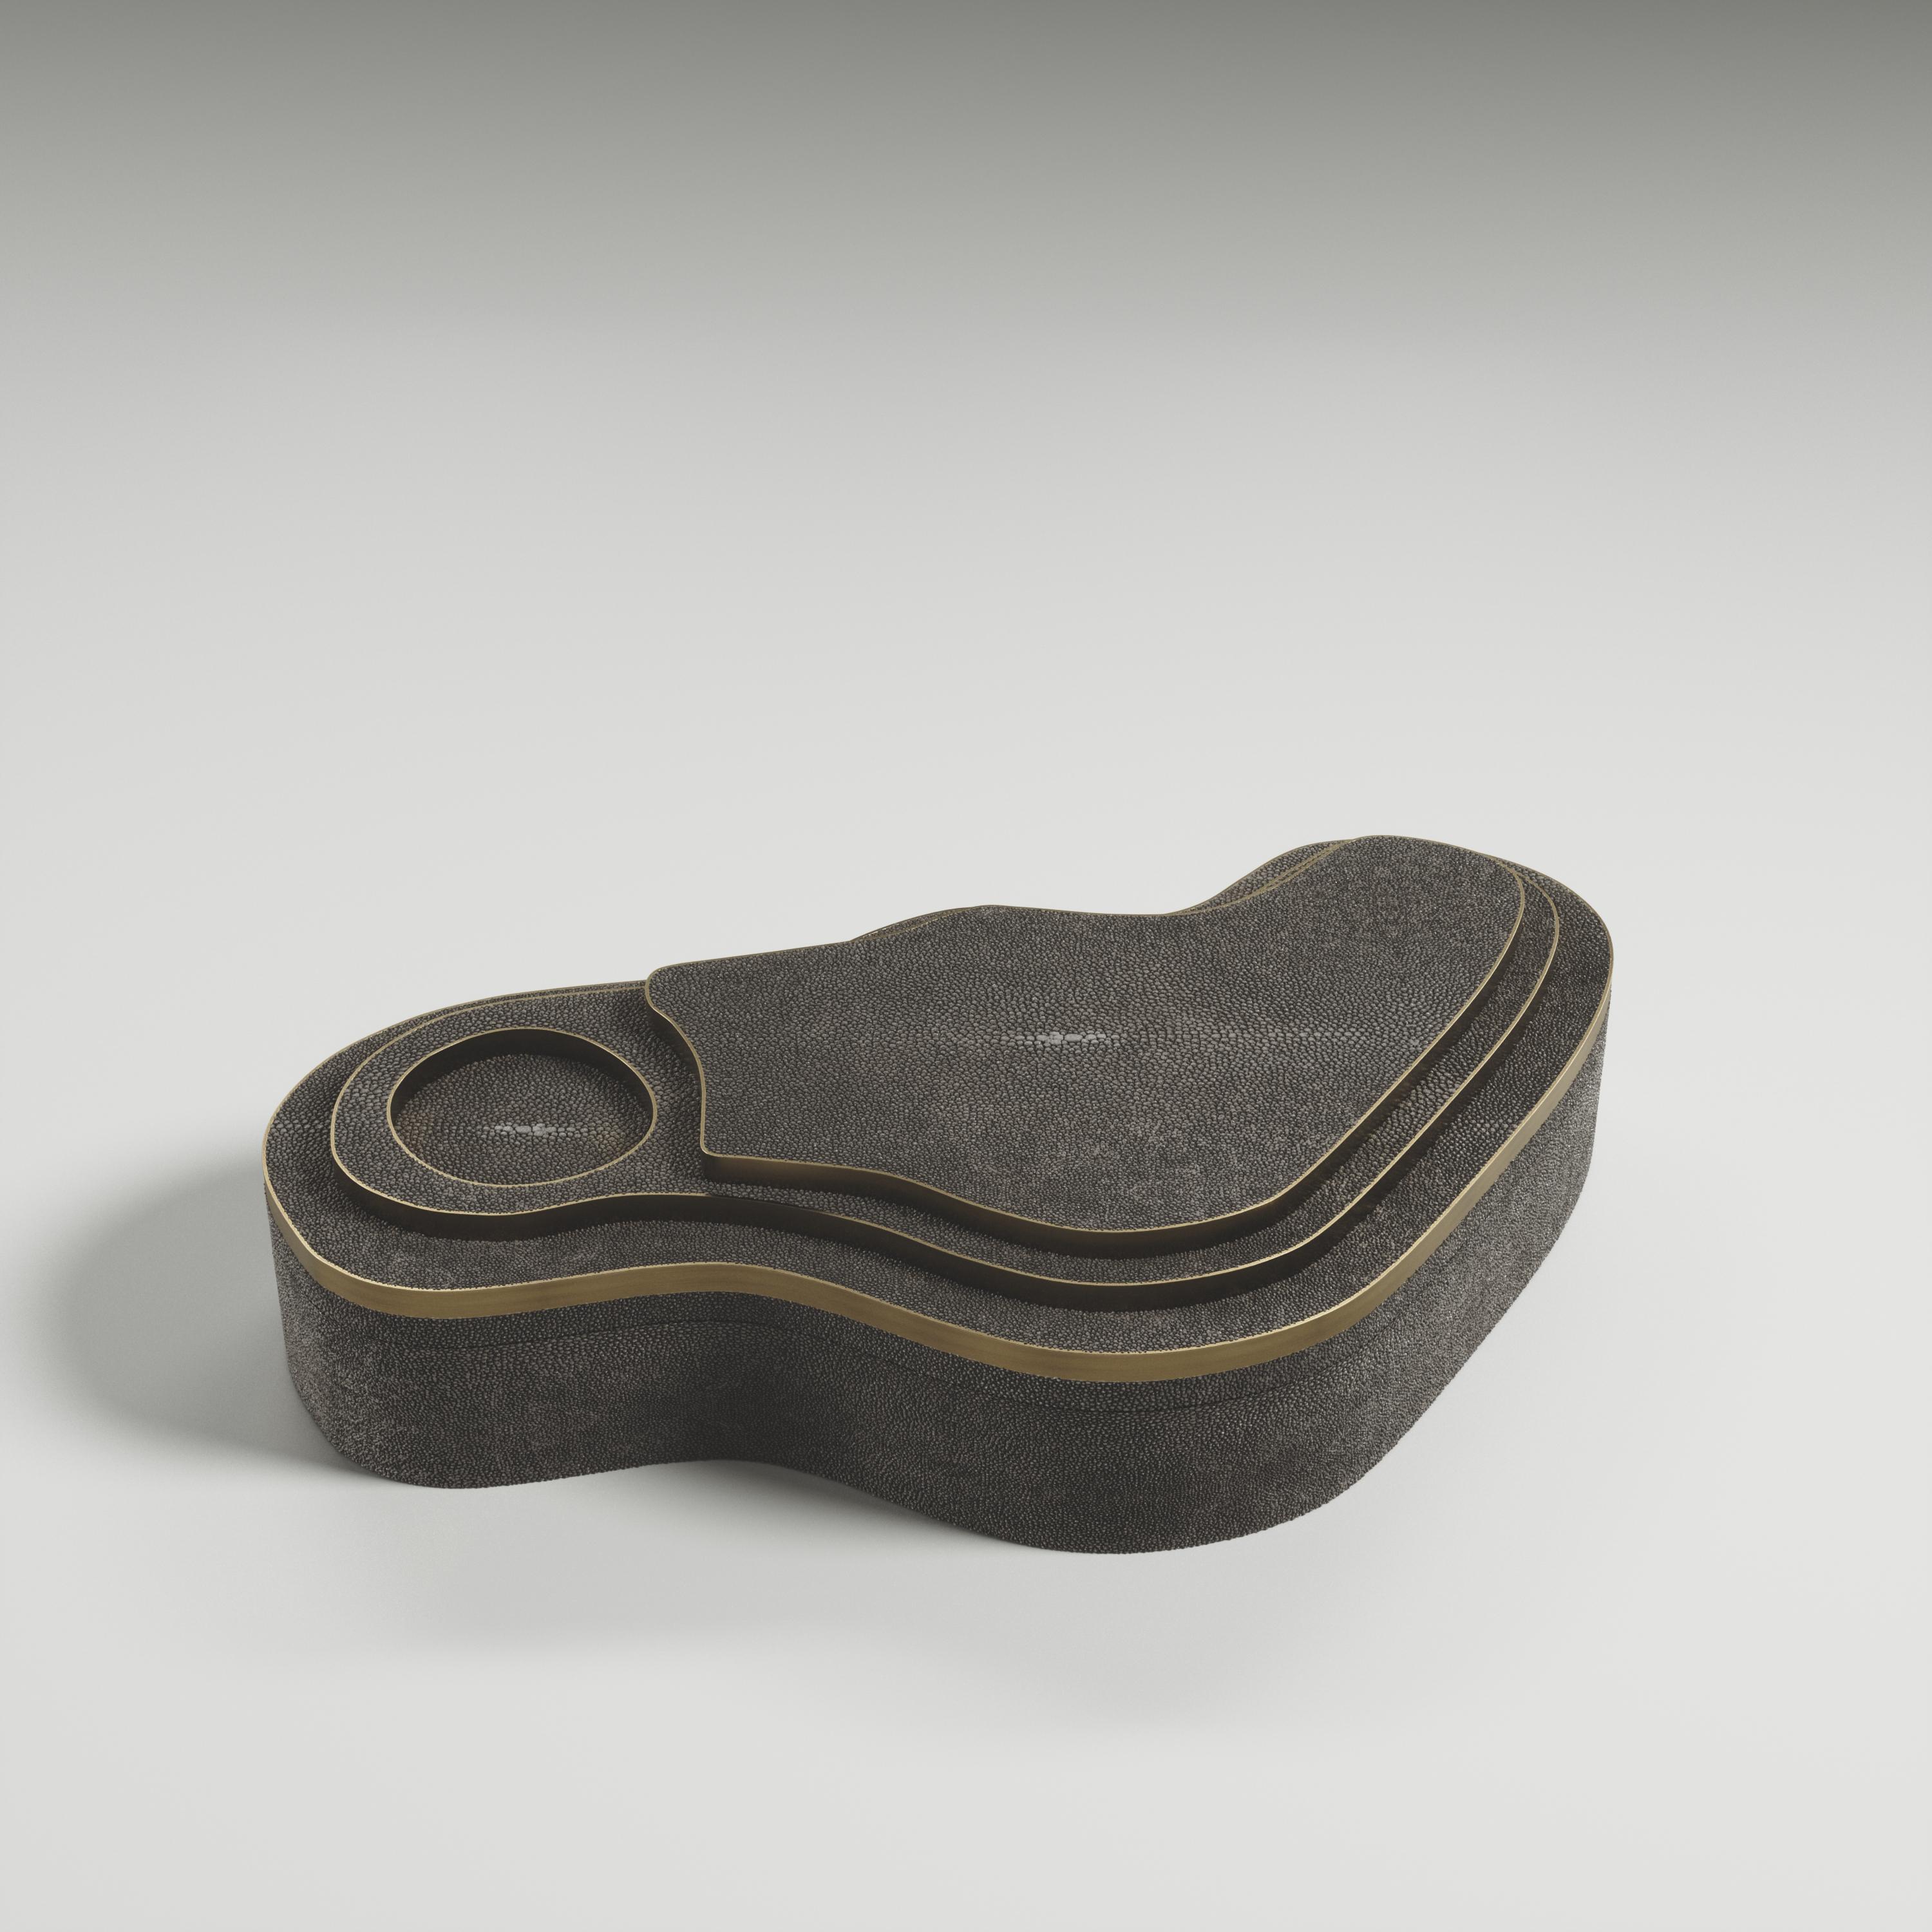 Die Maskenbox mit Relief von Kifu Paris ist ein vielseitiges und organisches Stück. Die amorphe Platte und der Sockel sind mit einer Mischung aus kohleschwarzem Chagrin und Bronze-Patina-Messing eingelegt. Dieses Stück wurde von Kifu Augousti, der